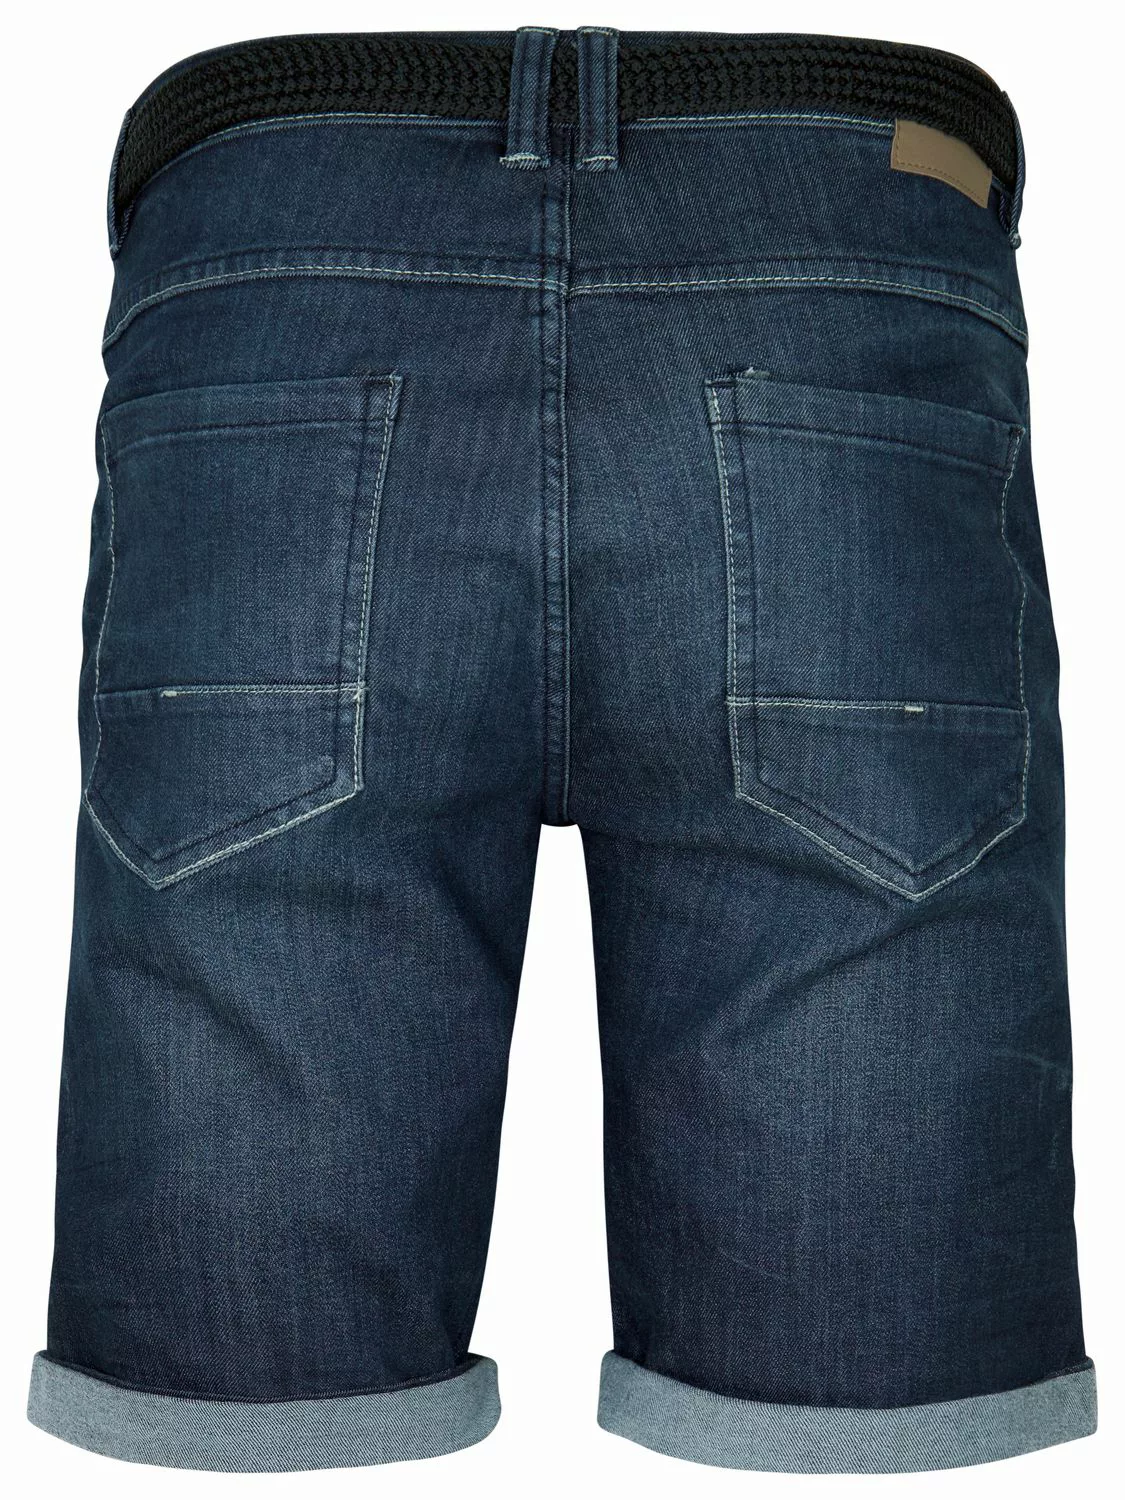 DENIMFY Jeans Shorts Herren mit Gürtel Stretch Kurz Regular Fit DFBo günstig online kaufen